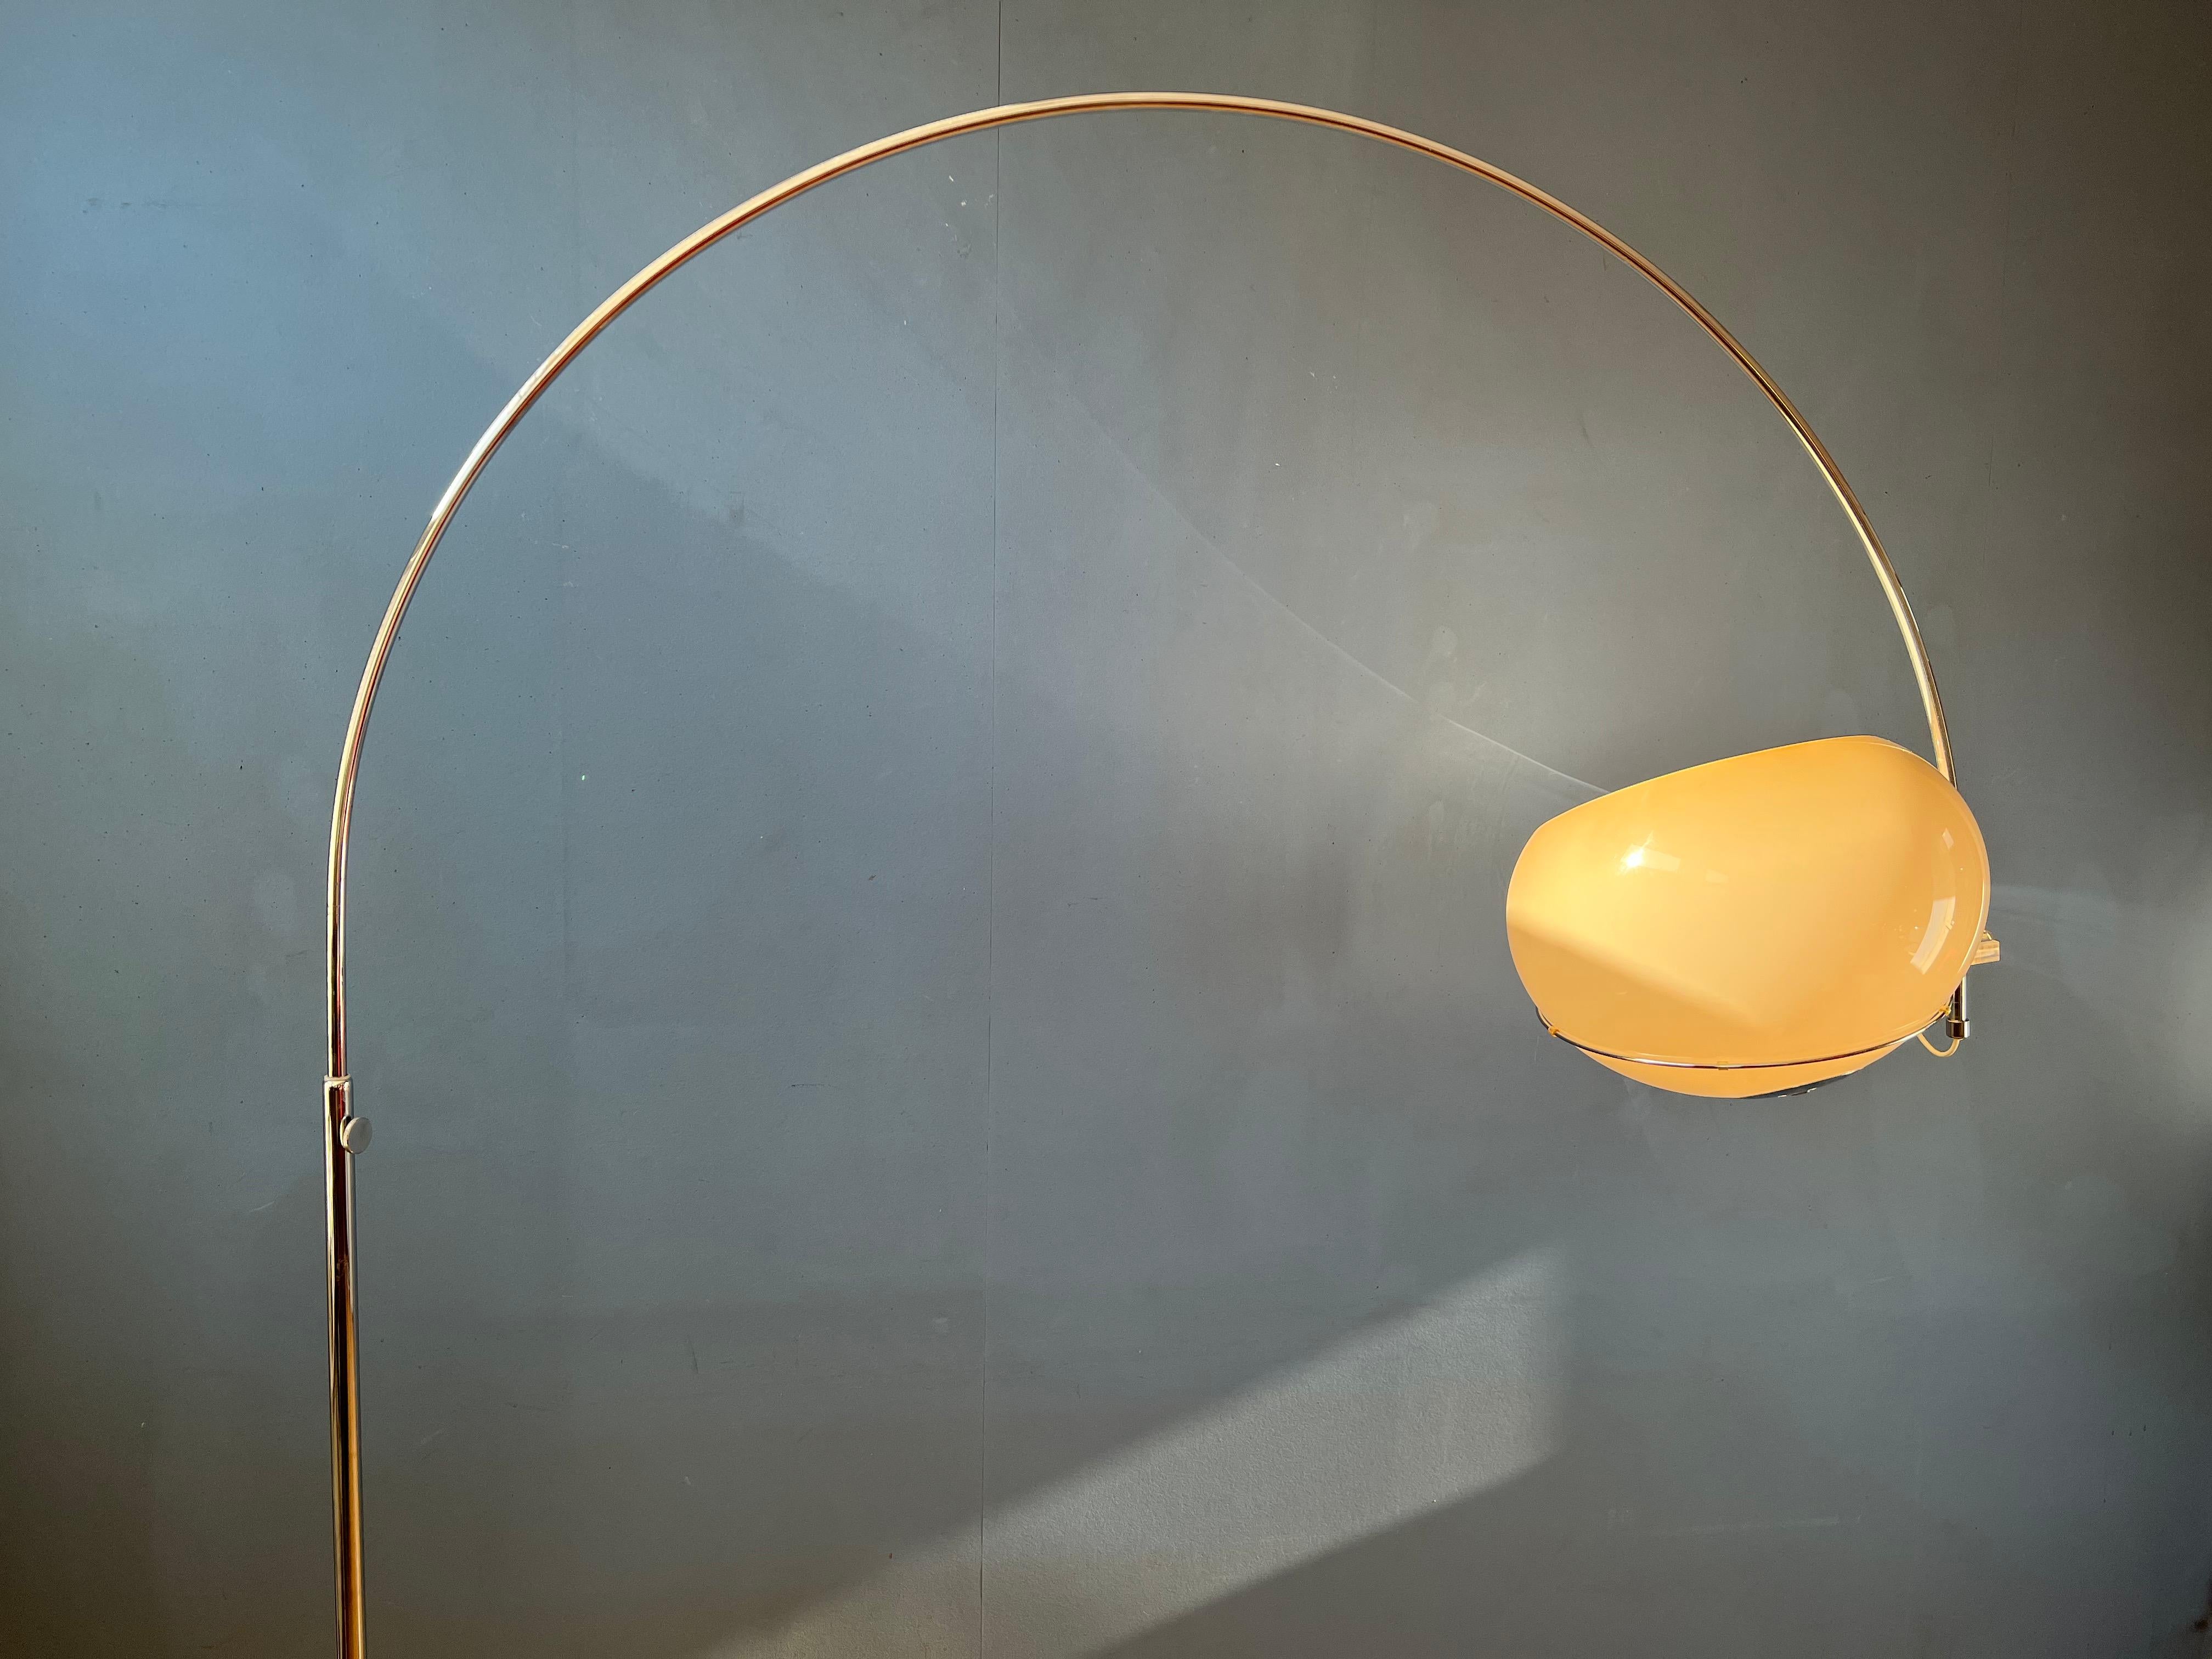 Late 20th Century Space Age GEPO Arc Floor Lamp in Style of Guzzini / Goffredo Reggiani